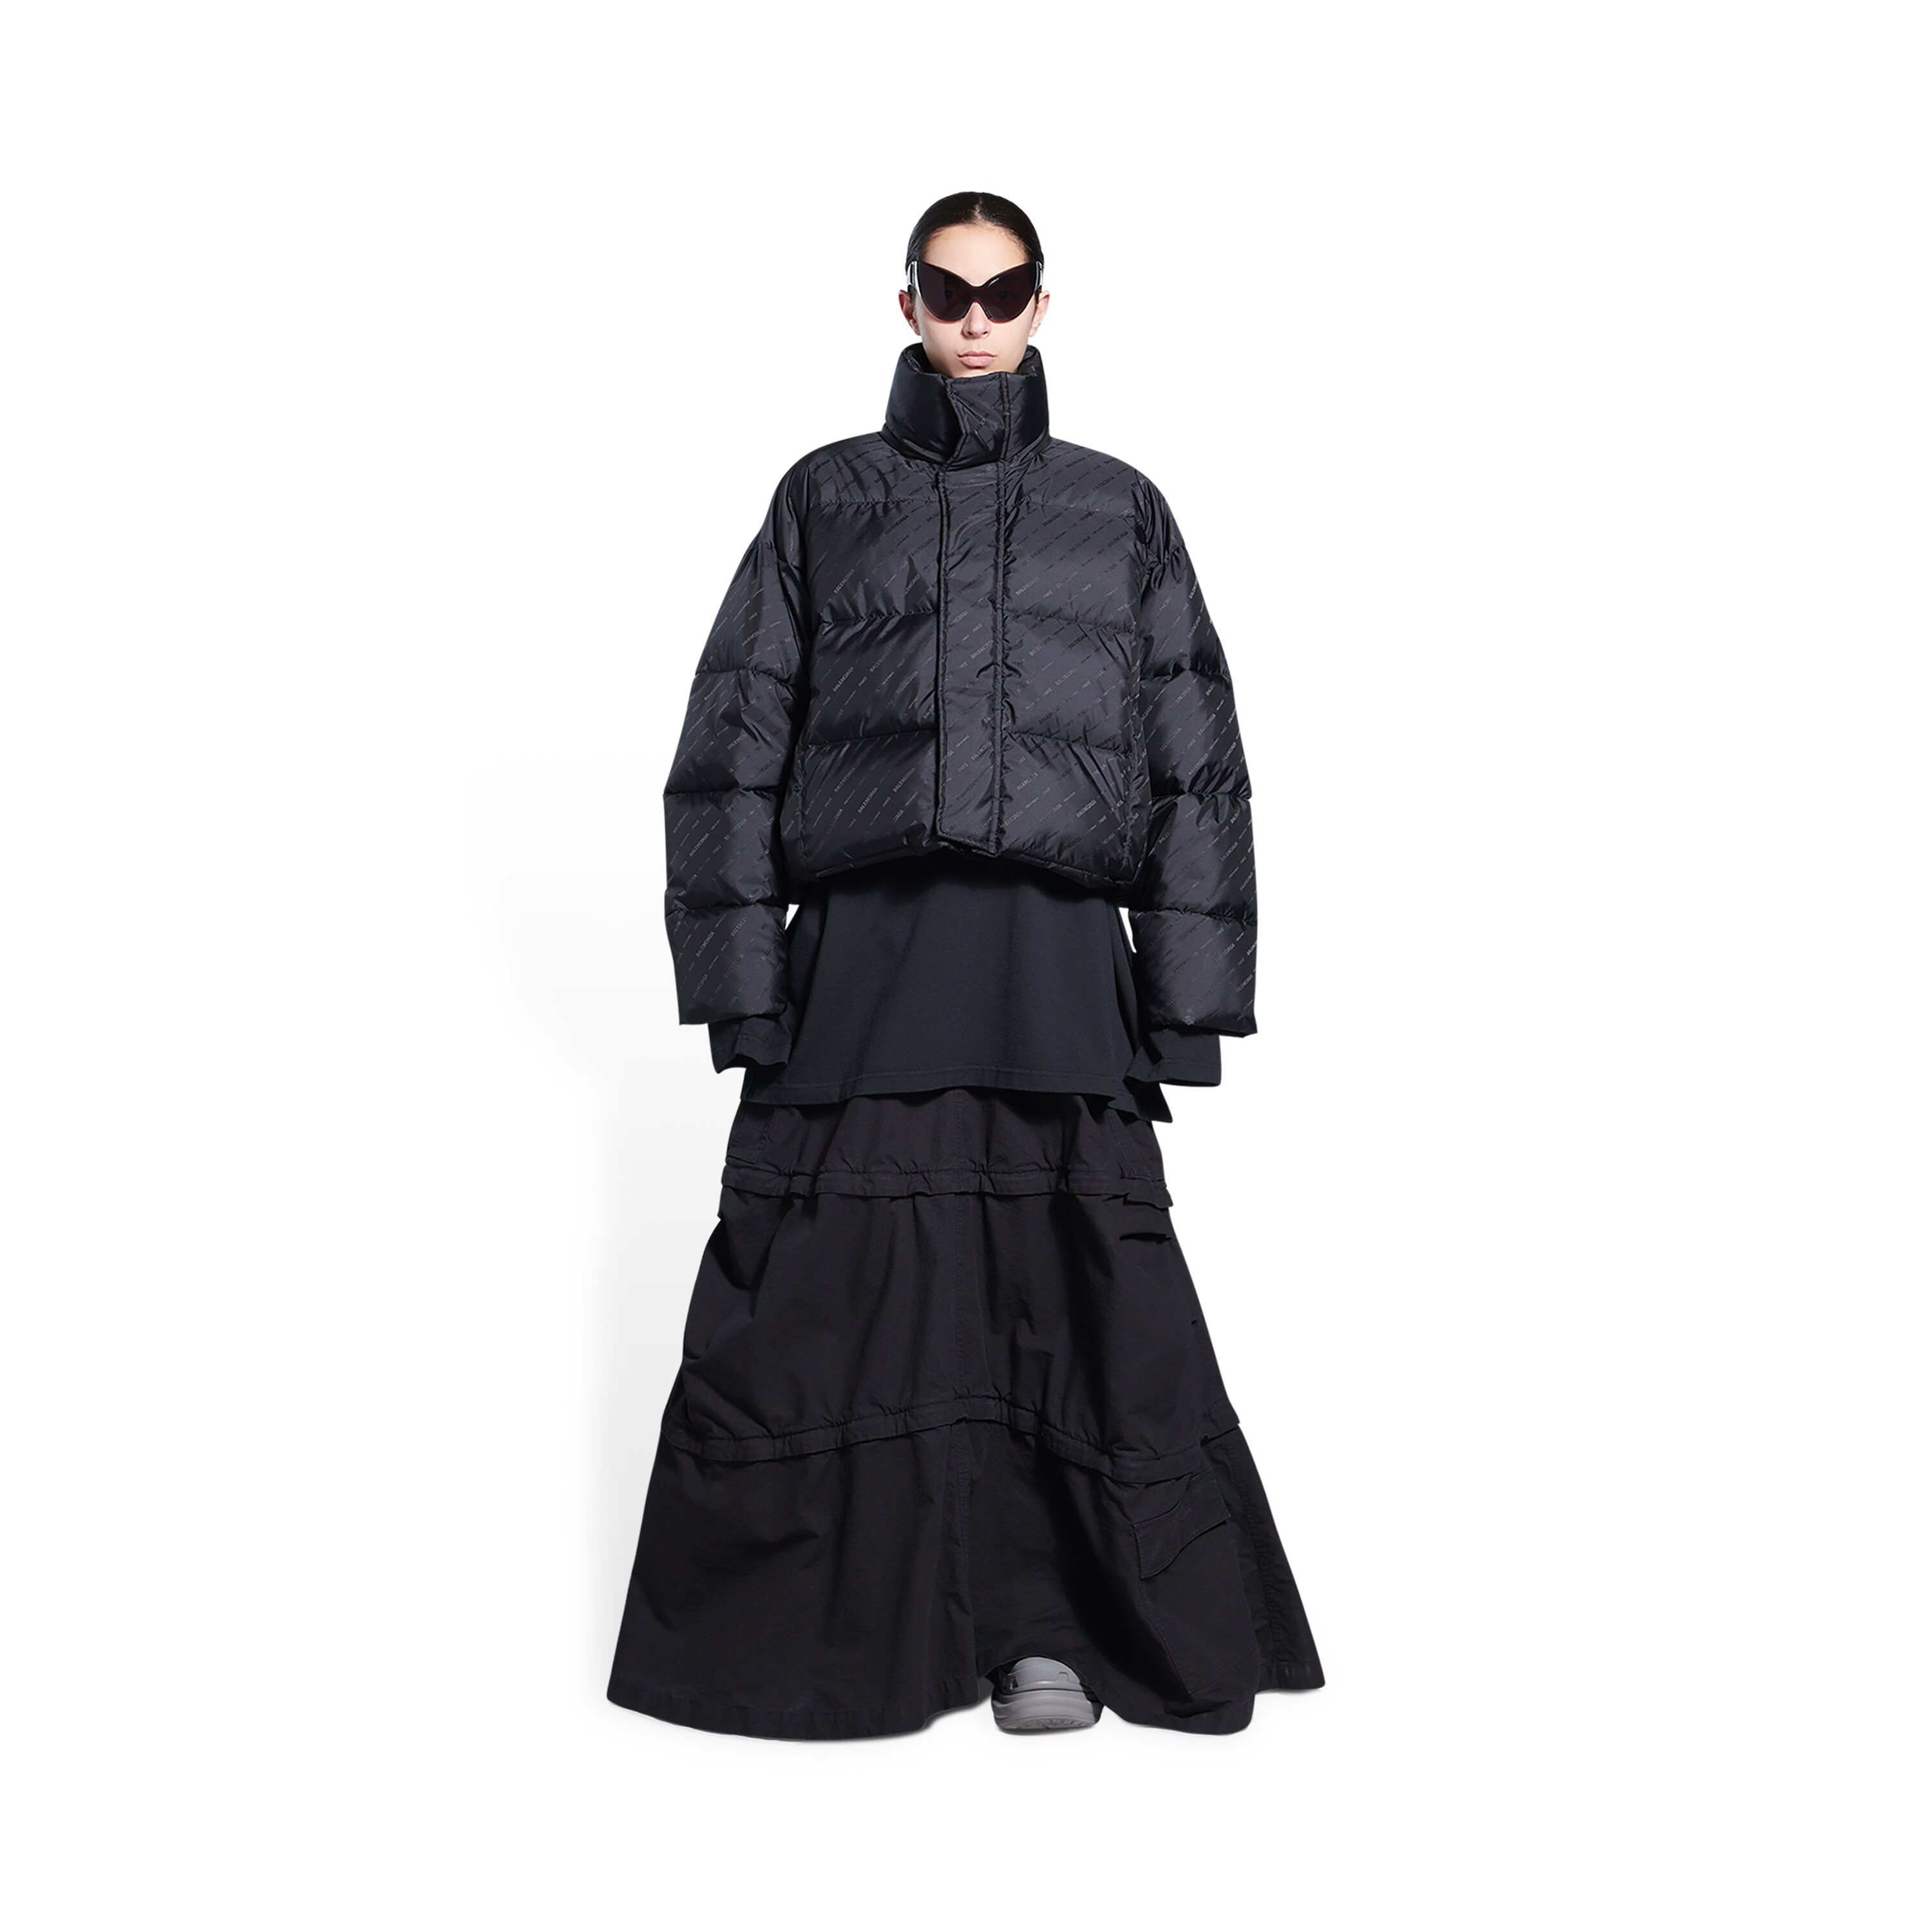 Chia sẻ hơn 80 balenciaga jacket black and white siêu đỉnh  trieuson5